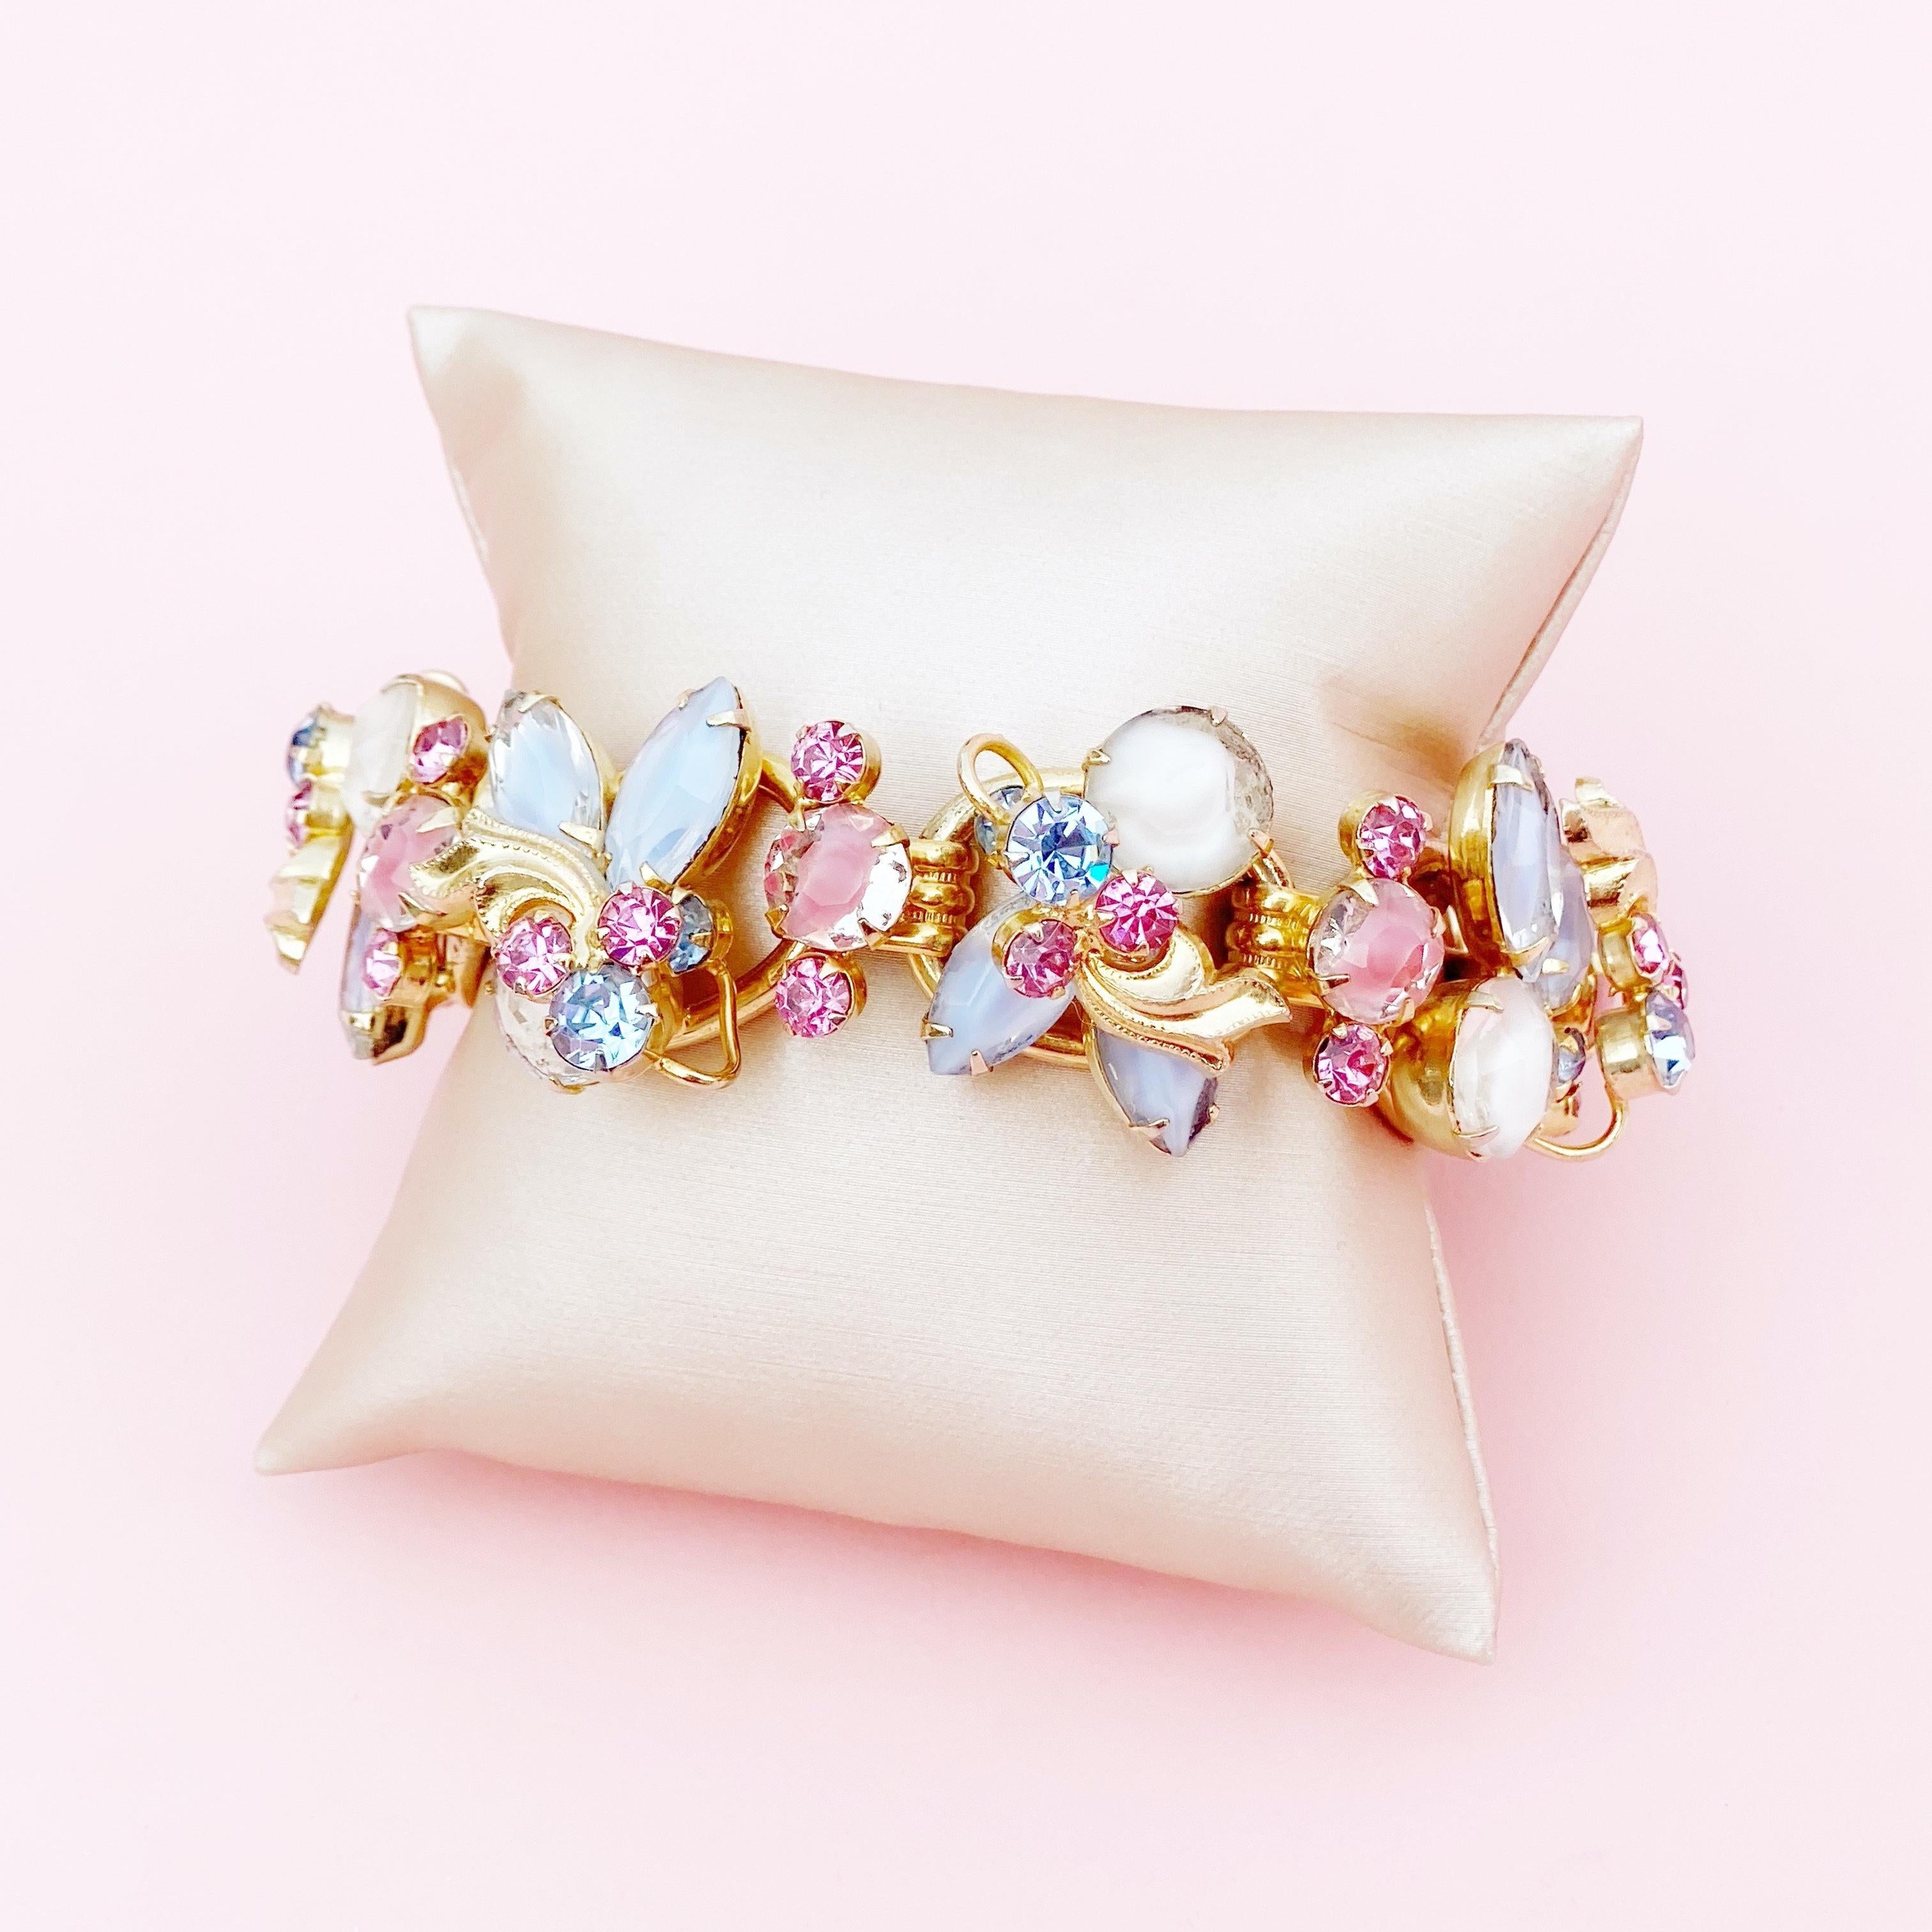 Pastel Pink & Blue Givre Glass & Rhinestone Juliana Bracelet By DeLizza & Elster 2